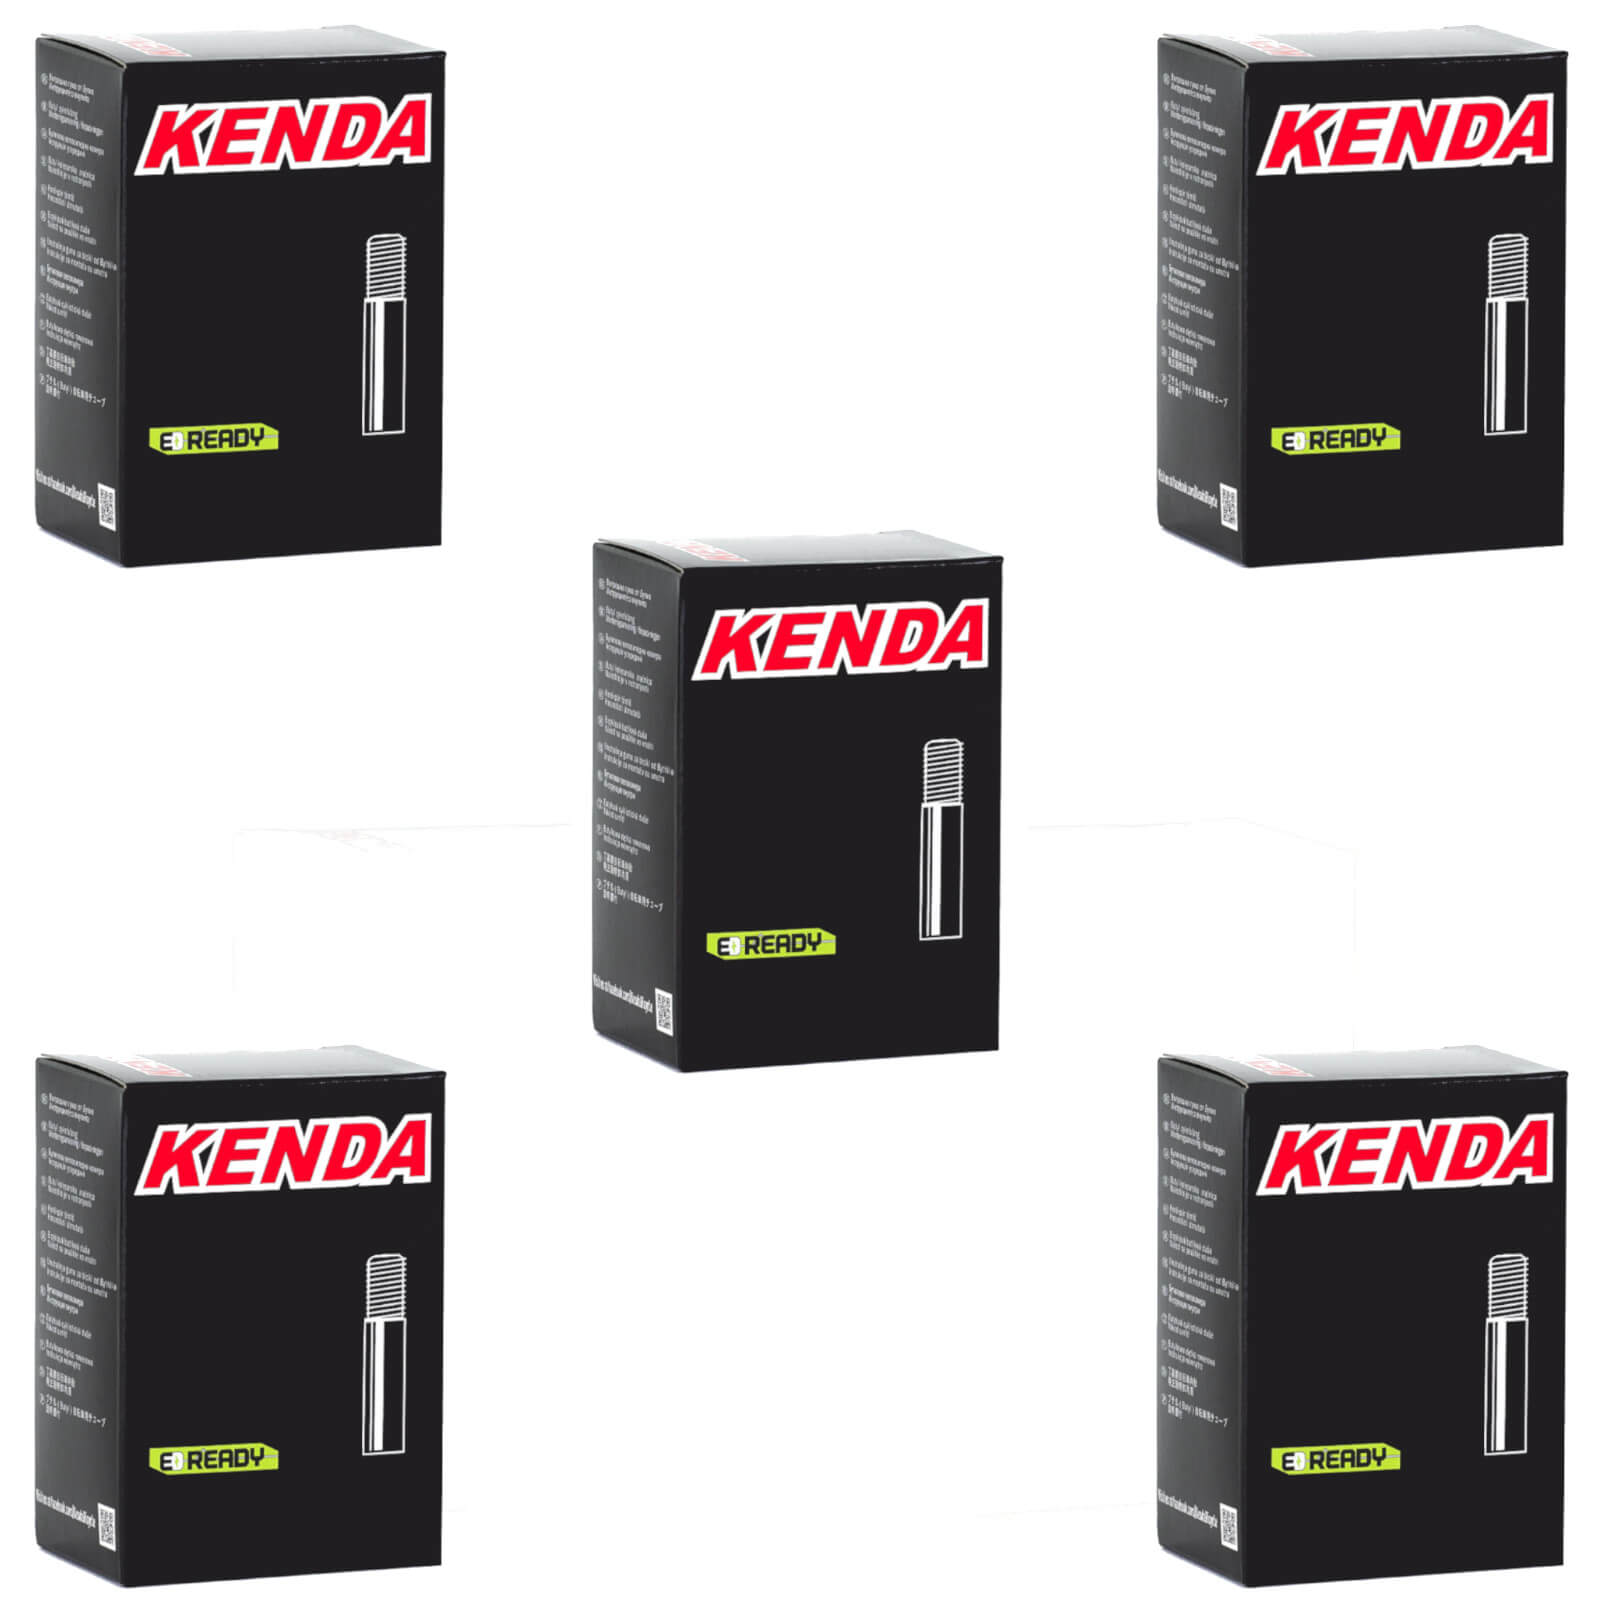 Kenda 700x45-50c 700c Schrader Valve Bike Inner Tube Pack of 5